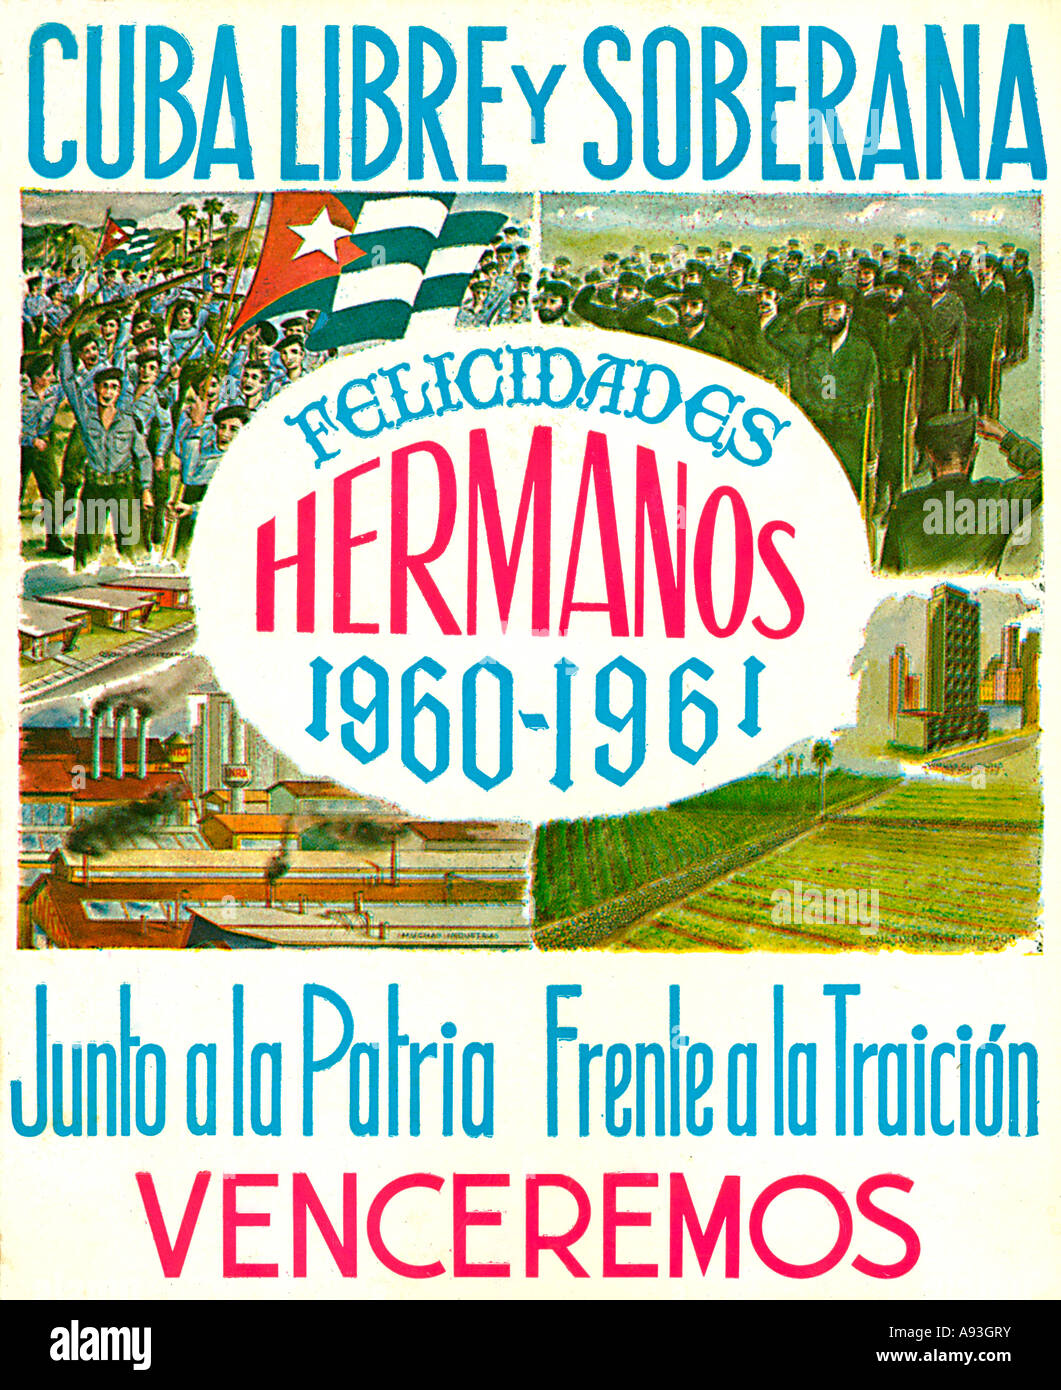 Politique cubain Cuba Libre 1960 affiche célébrant la révolution et les travailleurs qui ont rendu cela possible Banque D'Images